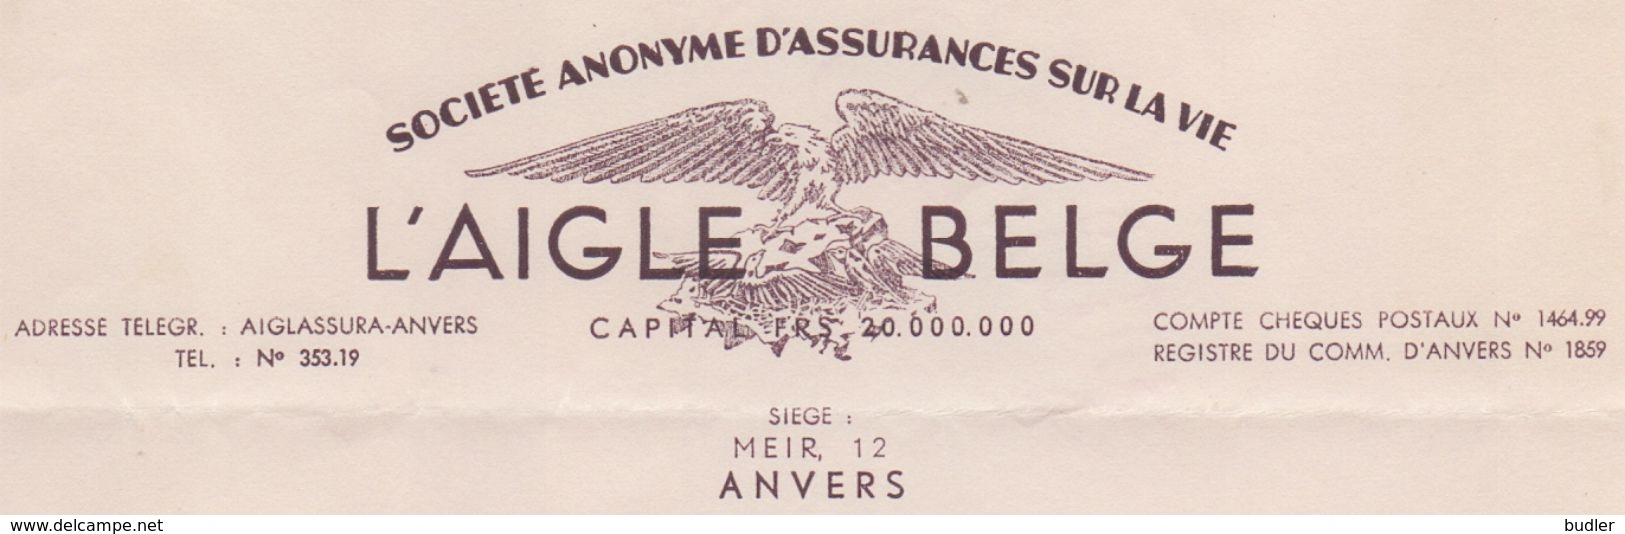 1947: Lettre De ## L'AIGLE BELGE, Meir, 12, ANVERS ##  Au ## Notaire GOBEAUX à FONTAINE-l'ÉVÊQUE ## - Banca & Assicurazione